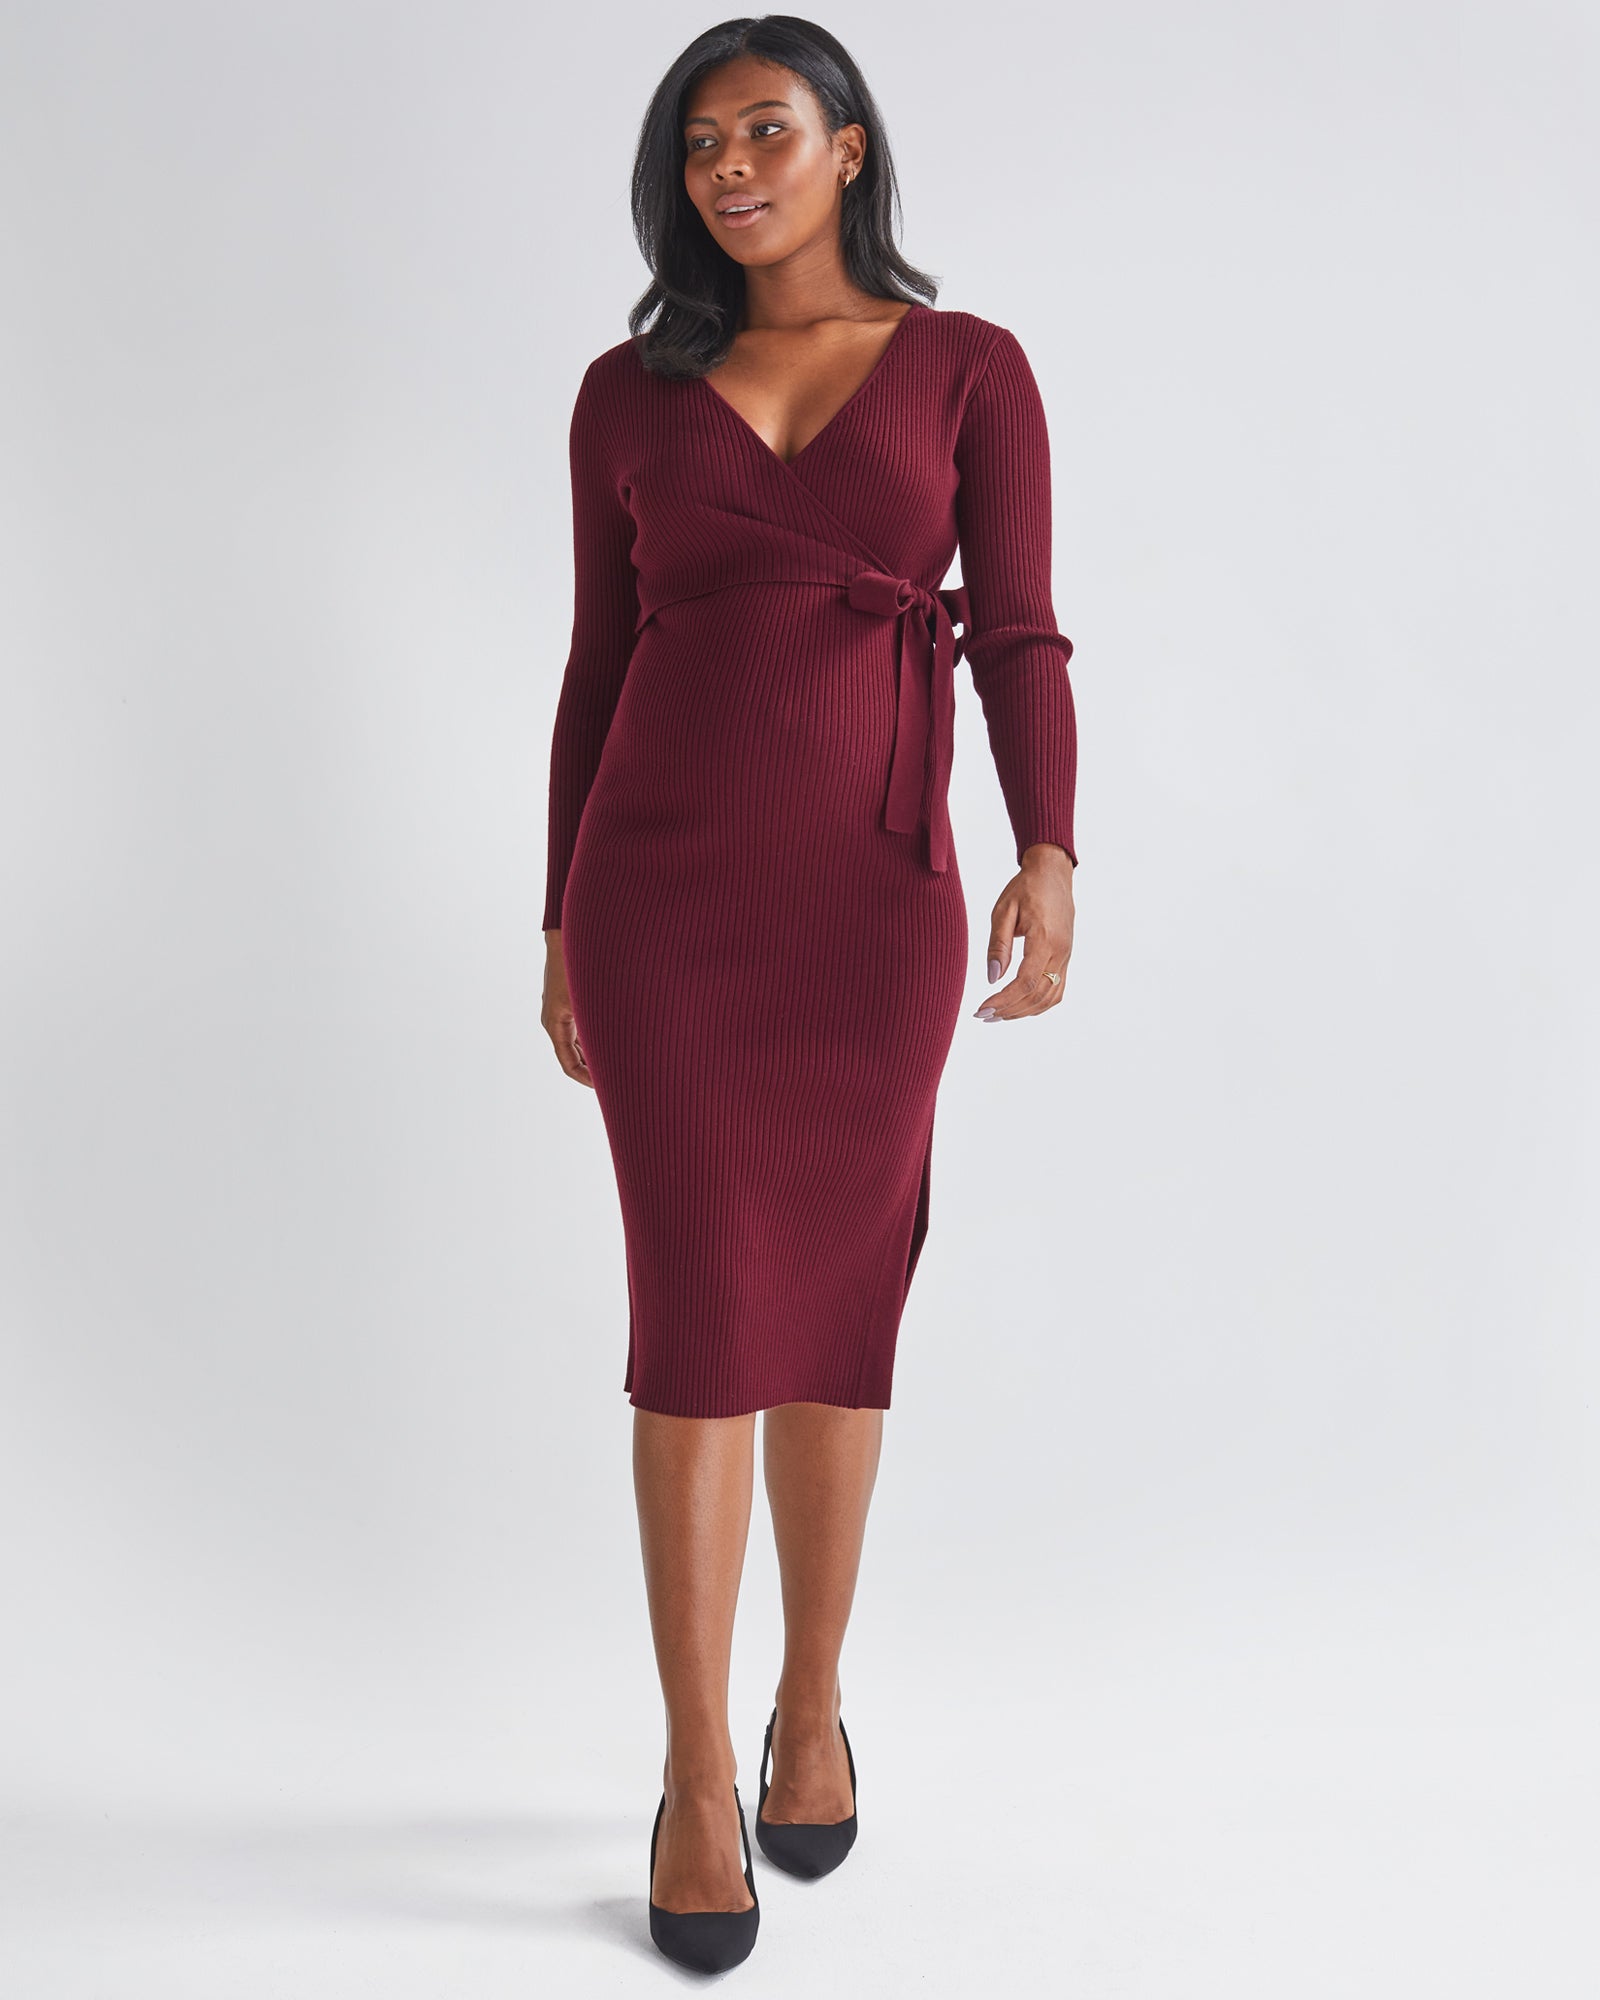 Layered Maternity Dress | Wholesale Boho Clothing